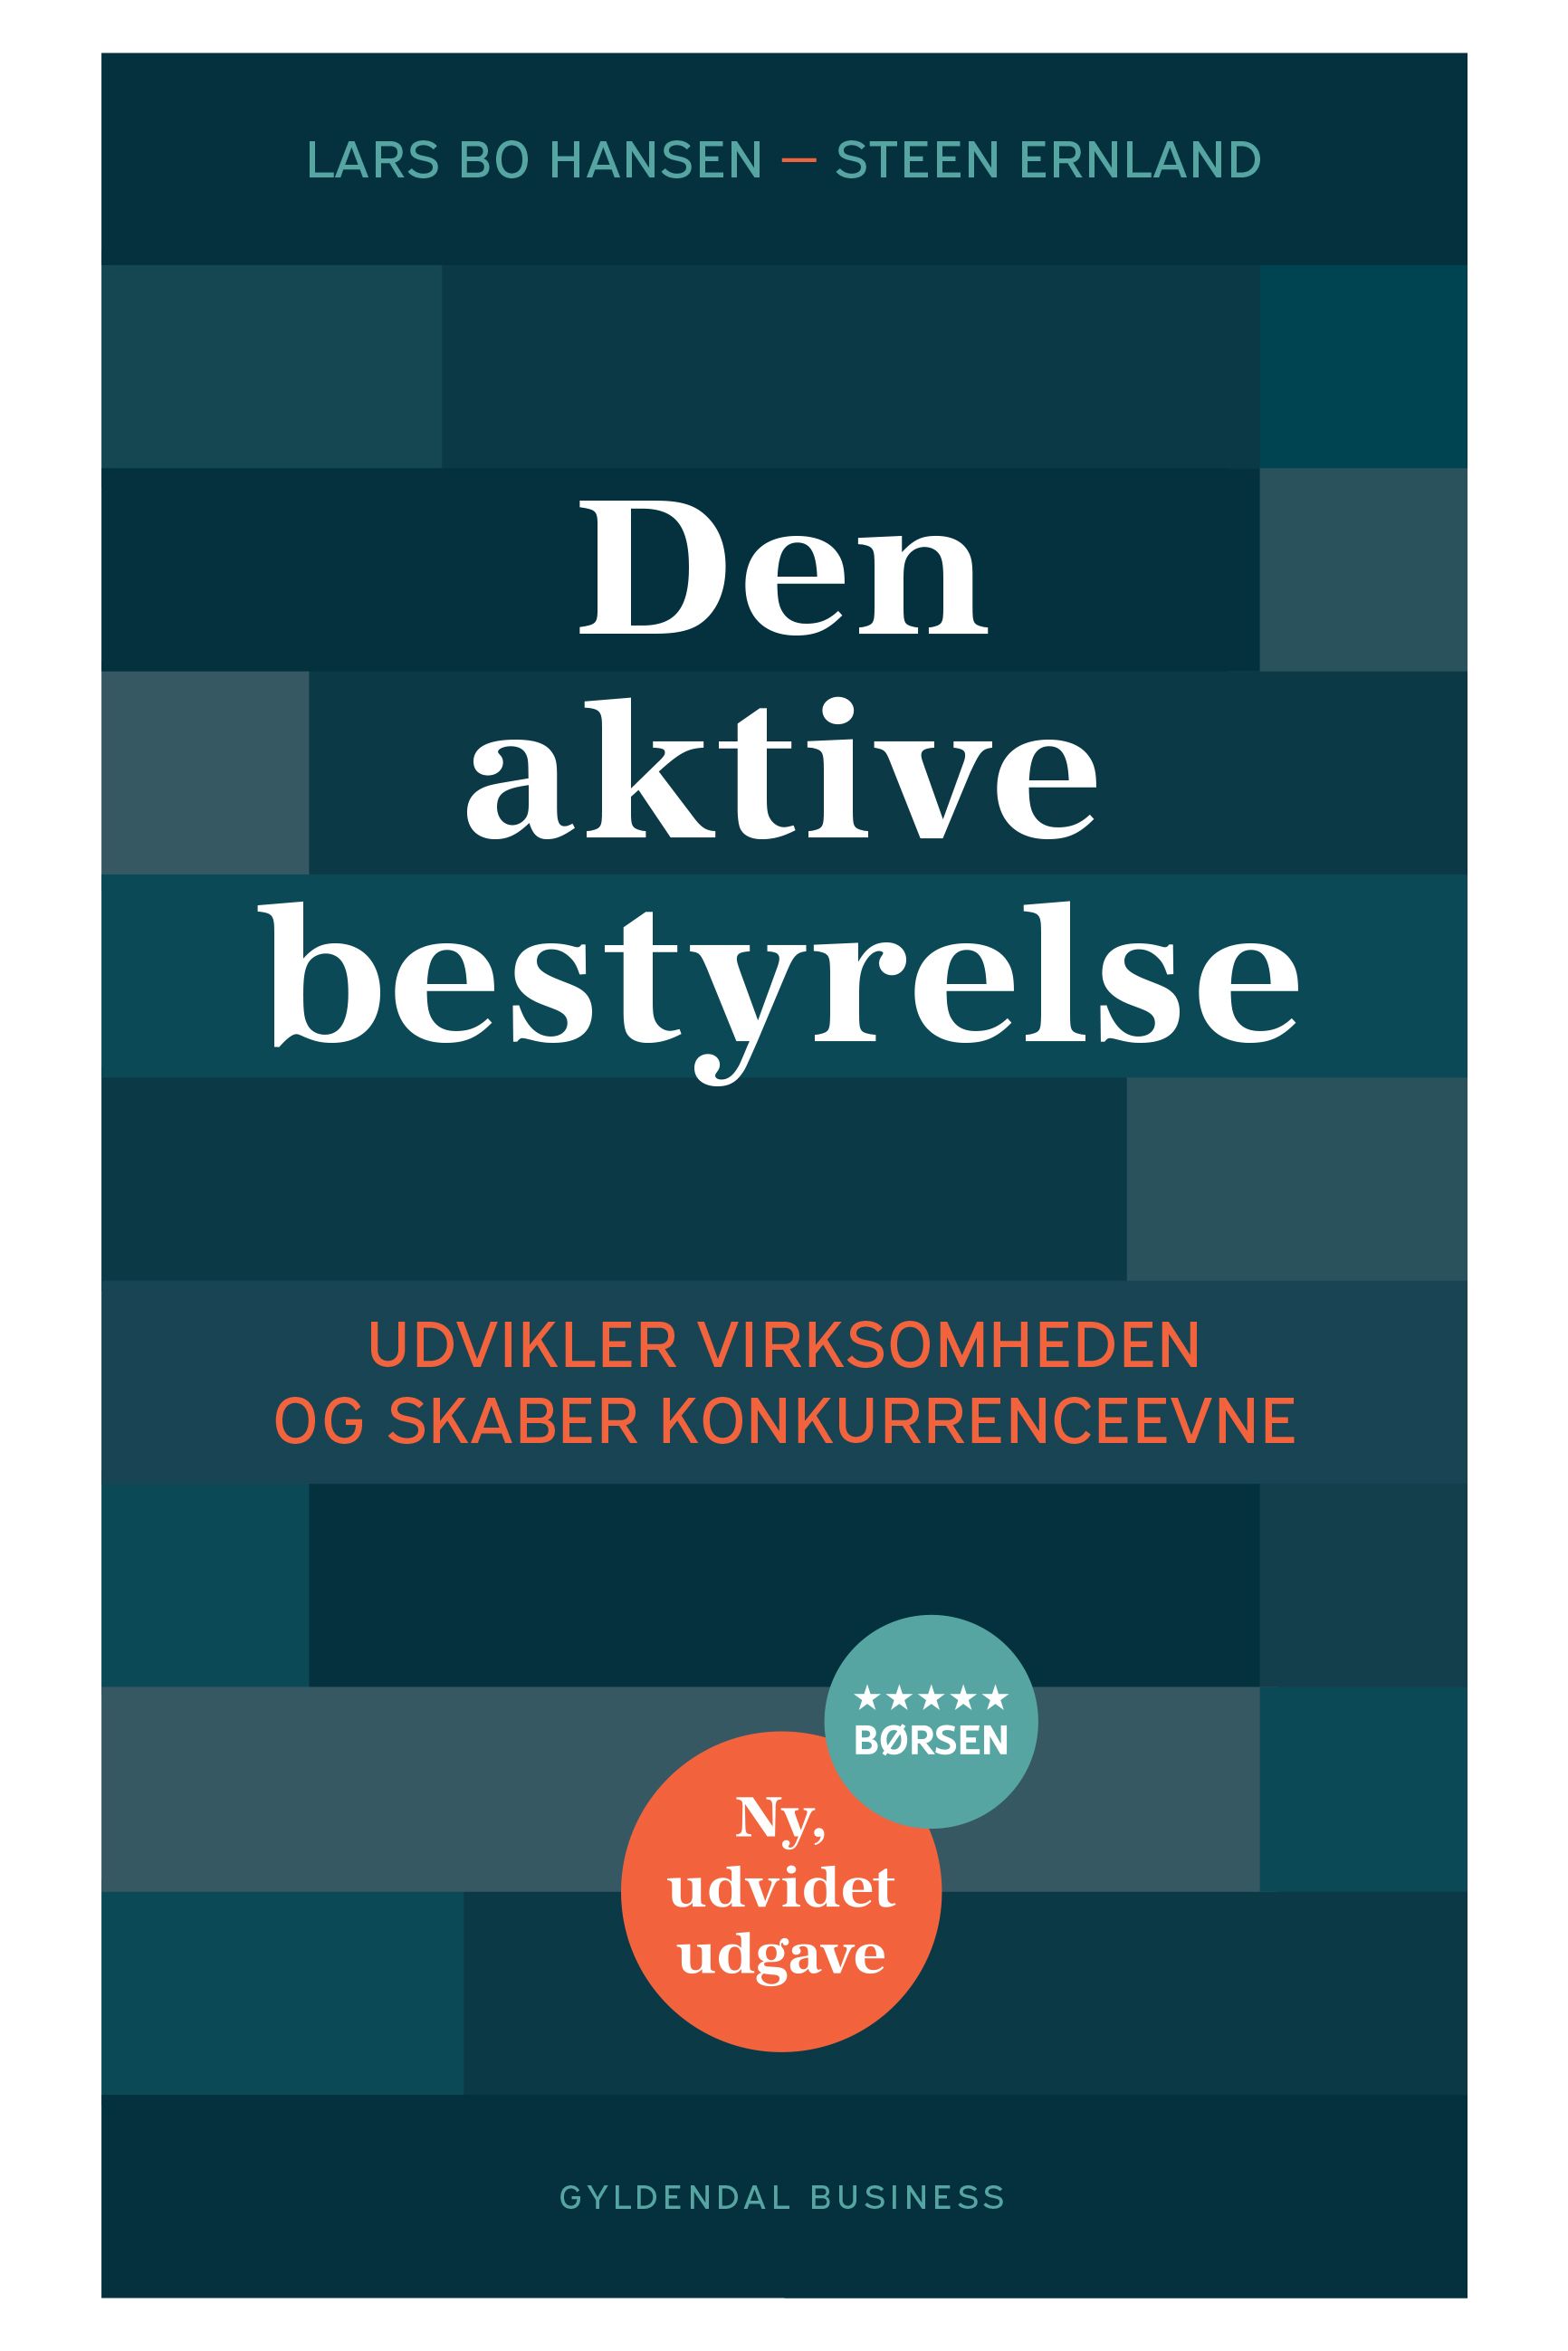 Den aktive bestyrelse, e-bog af Steen Ernland, Lars Bo Hansen